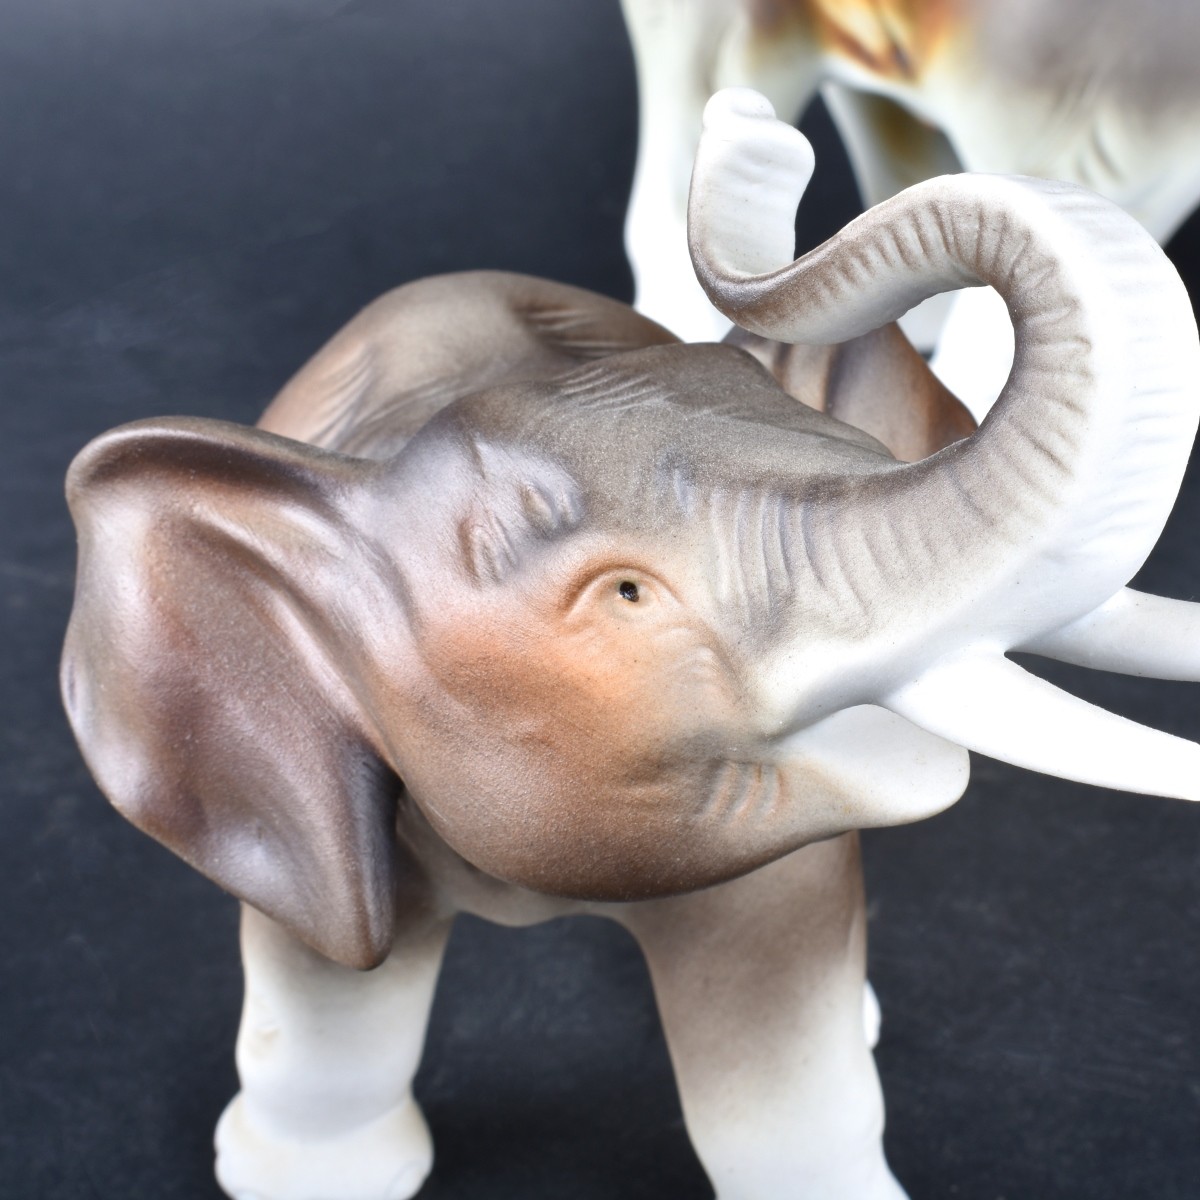 Four (4) Royal Dux Porcelain Elephant Figurines